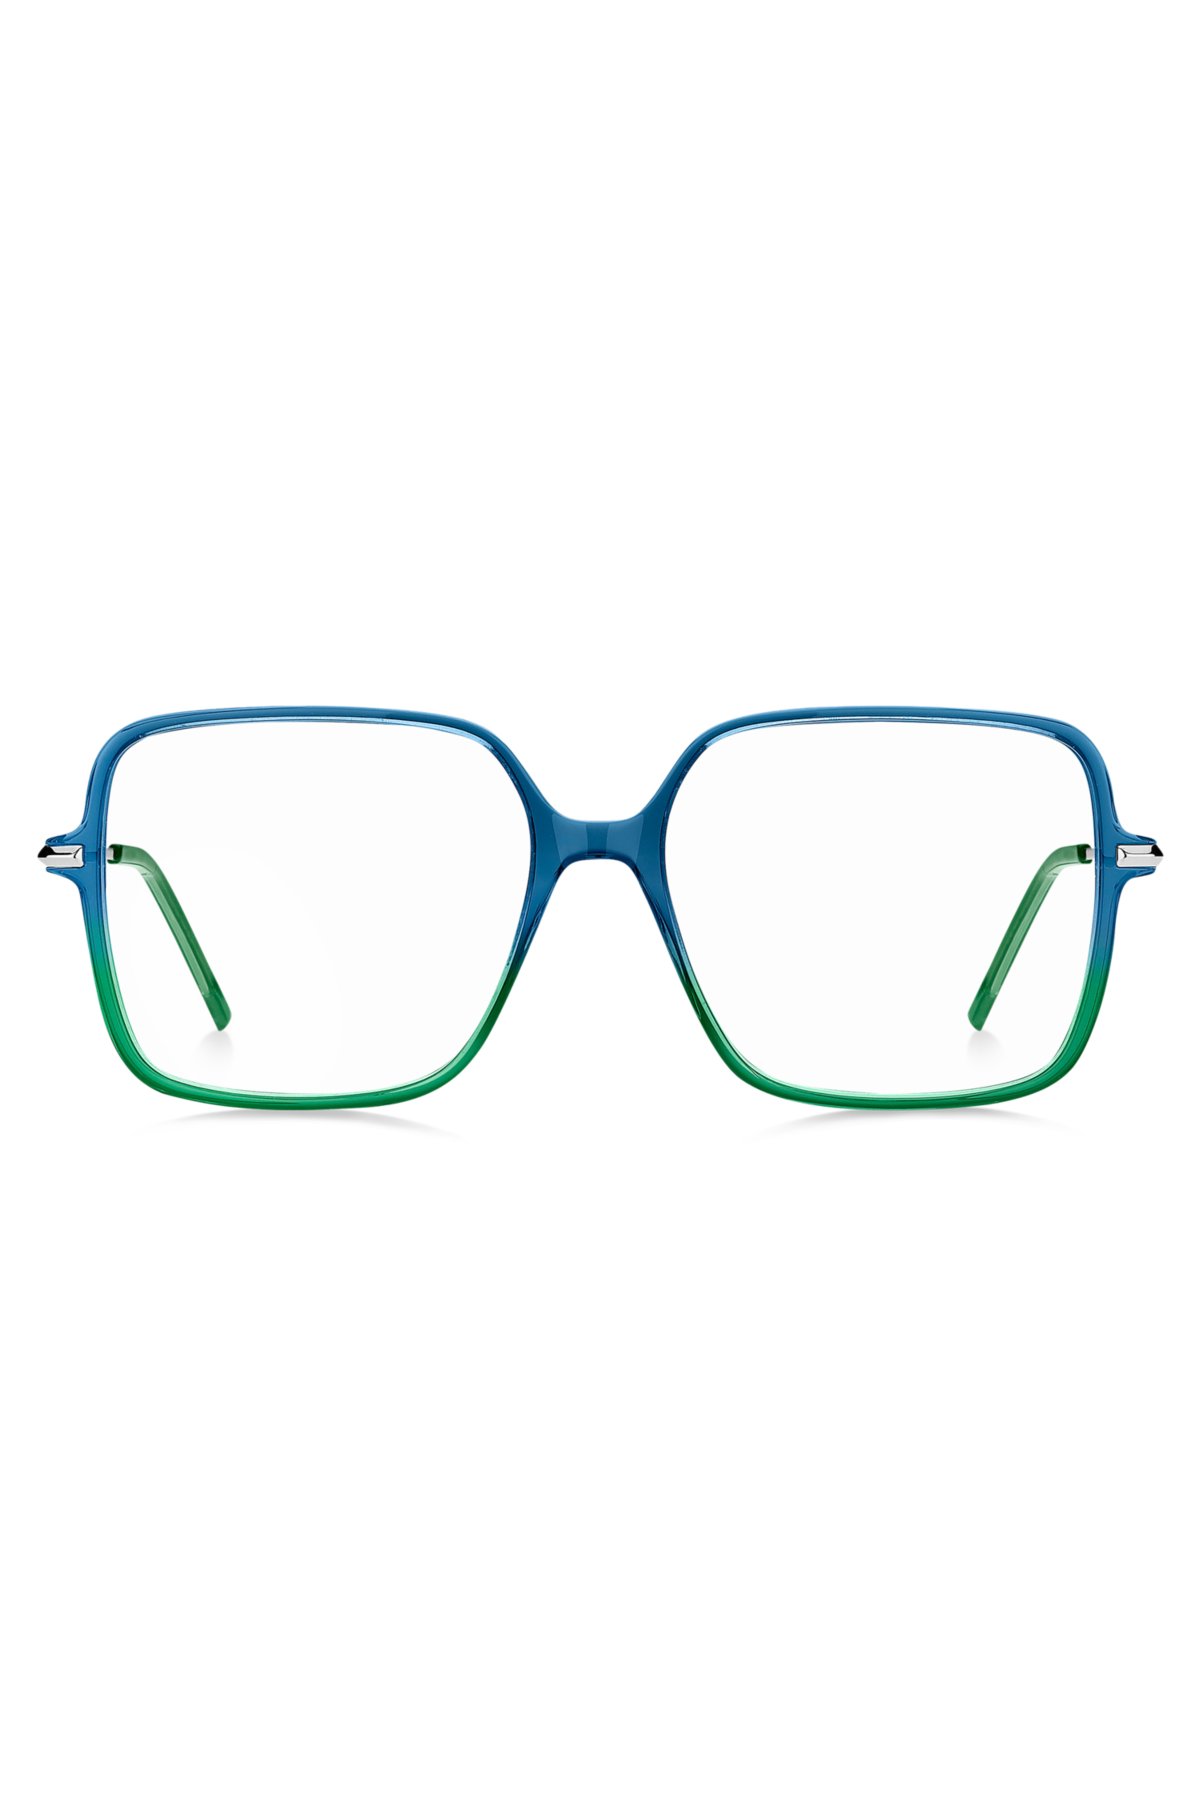 - Montuur voor optische bril met voorkant en ronde pootjes